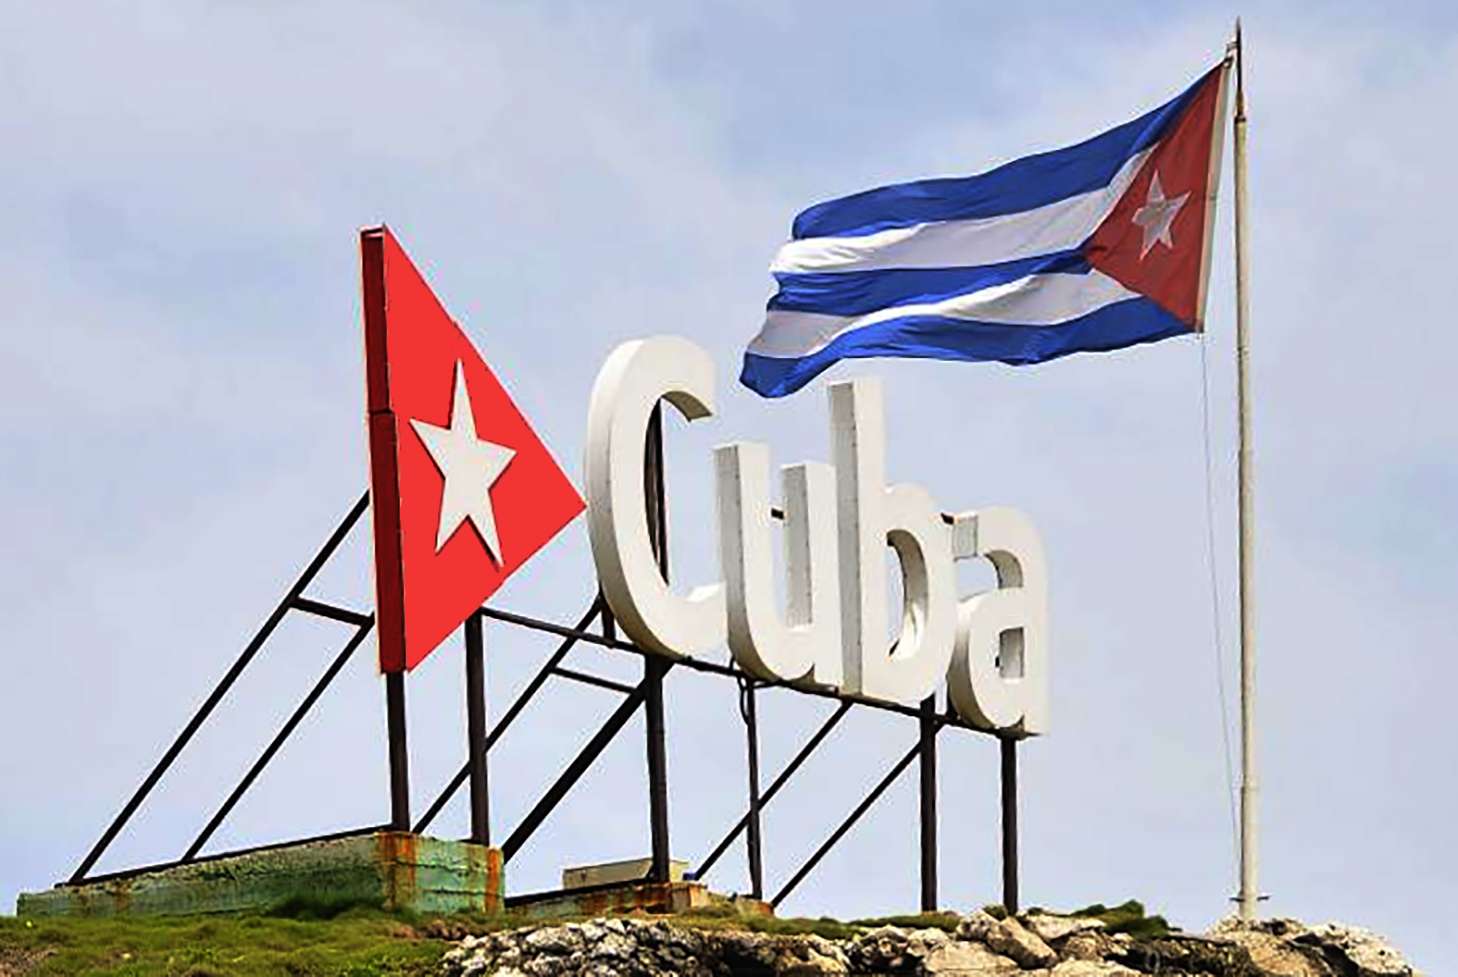 Continúa apoyo internacional a Cuba ante intentos desestabilizadores